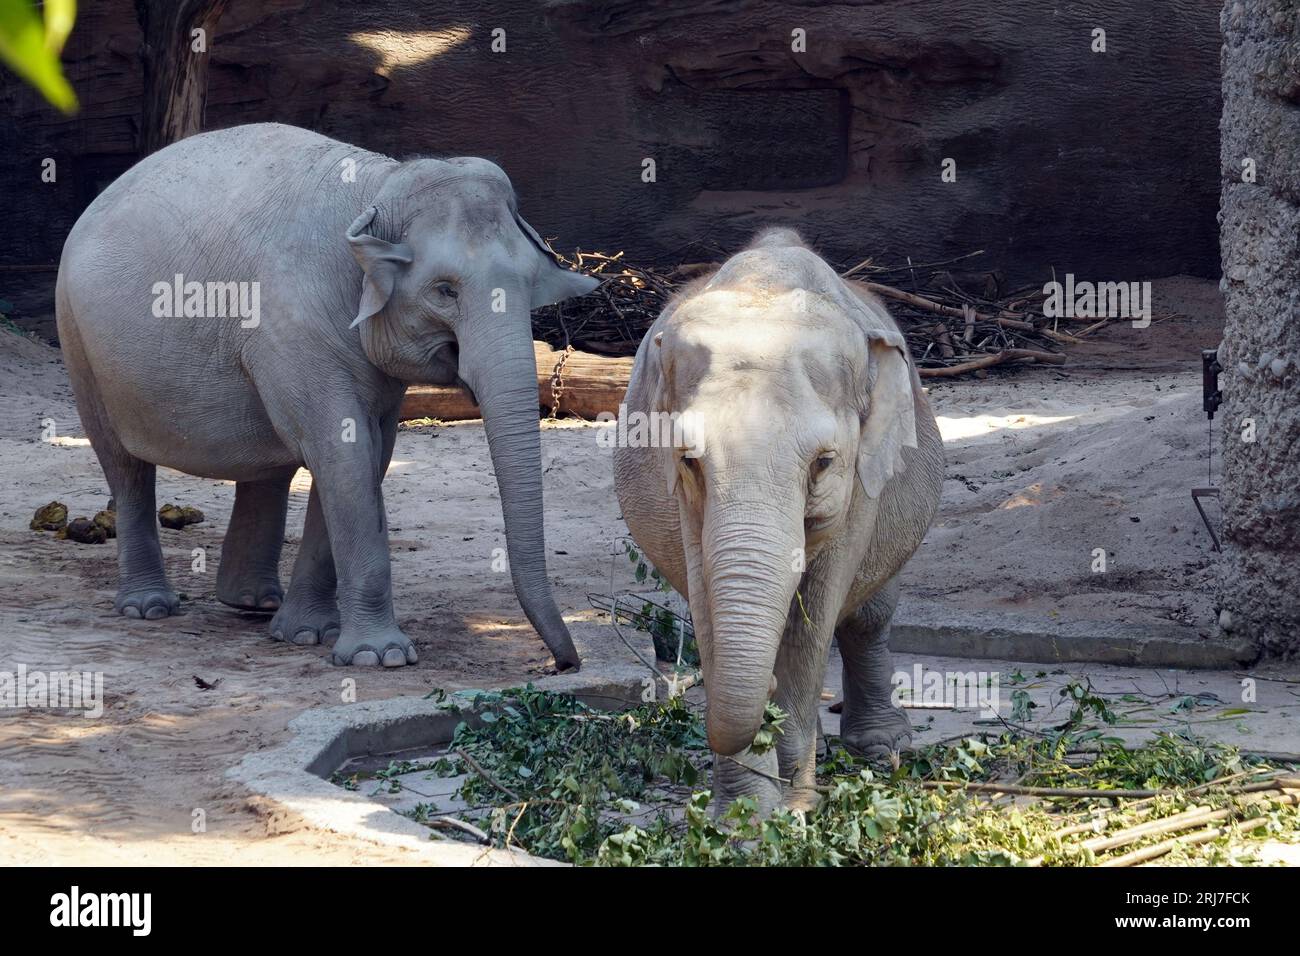 Deux éléphants indiens en latin appelés Elephas maximus indicus vivant en captivité. Banque D'Images